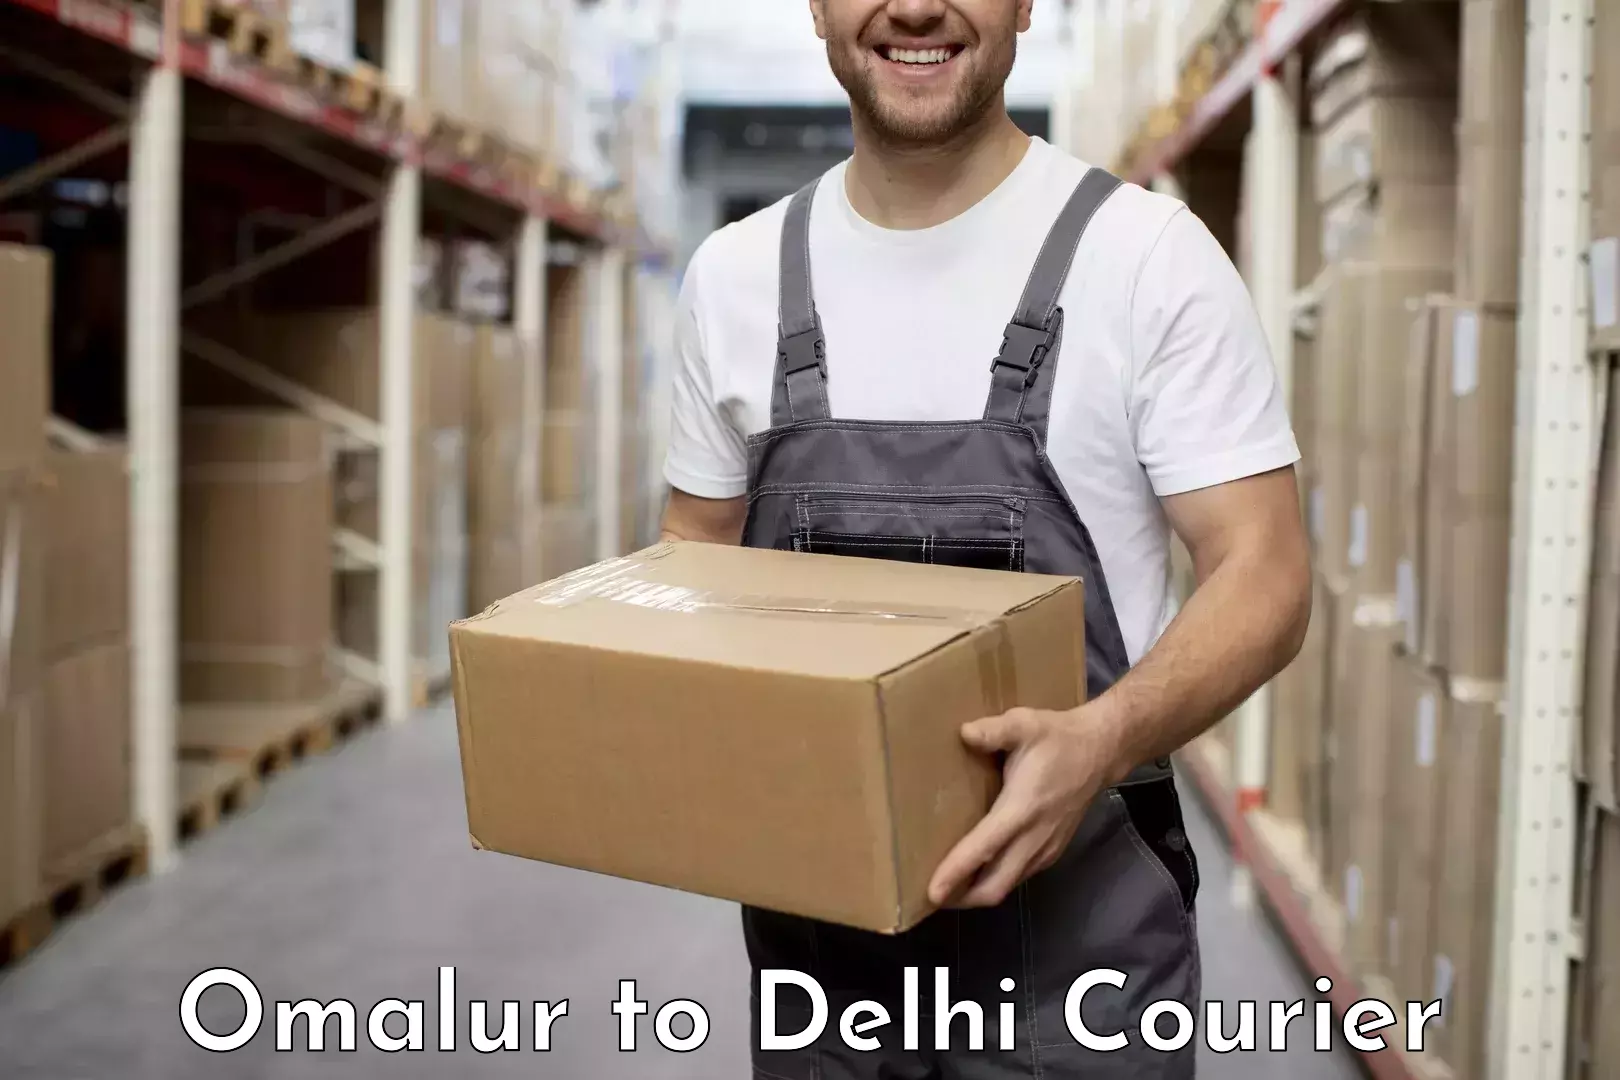 International courier networks Omalur to Jamia Millia Islamia New Delhi